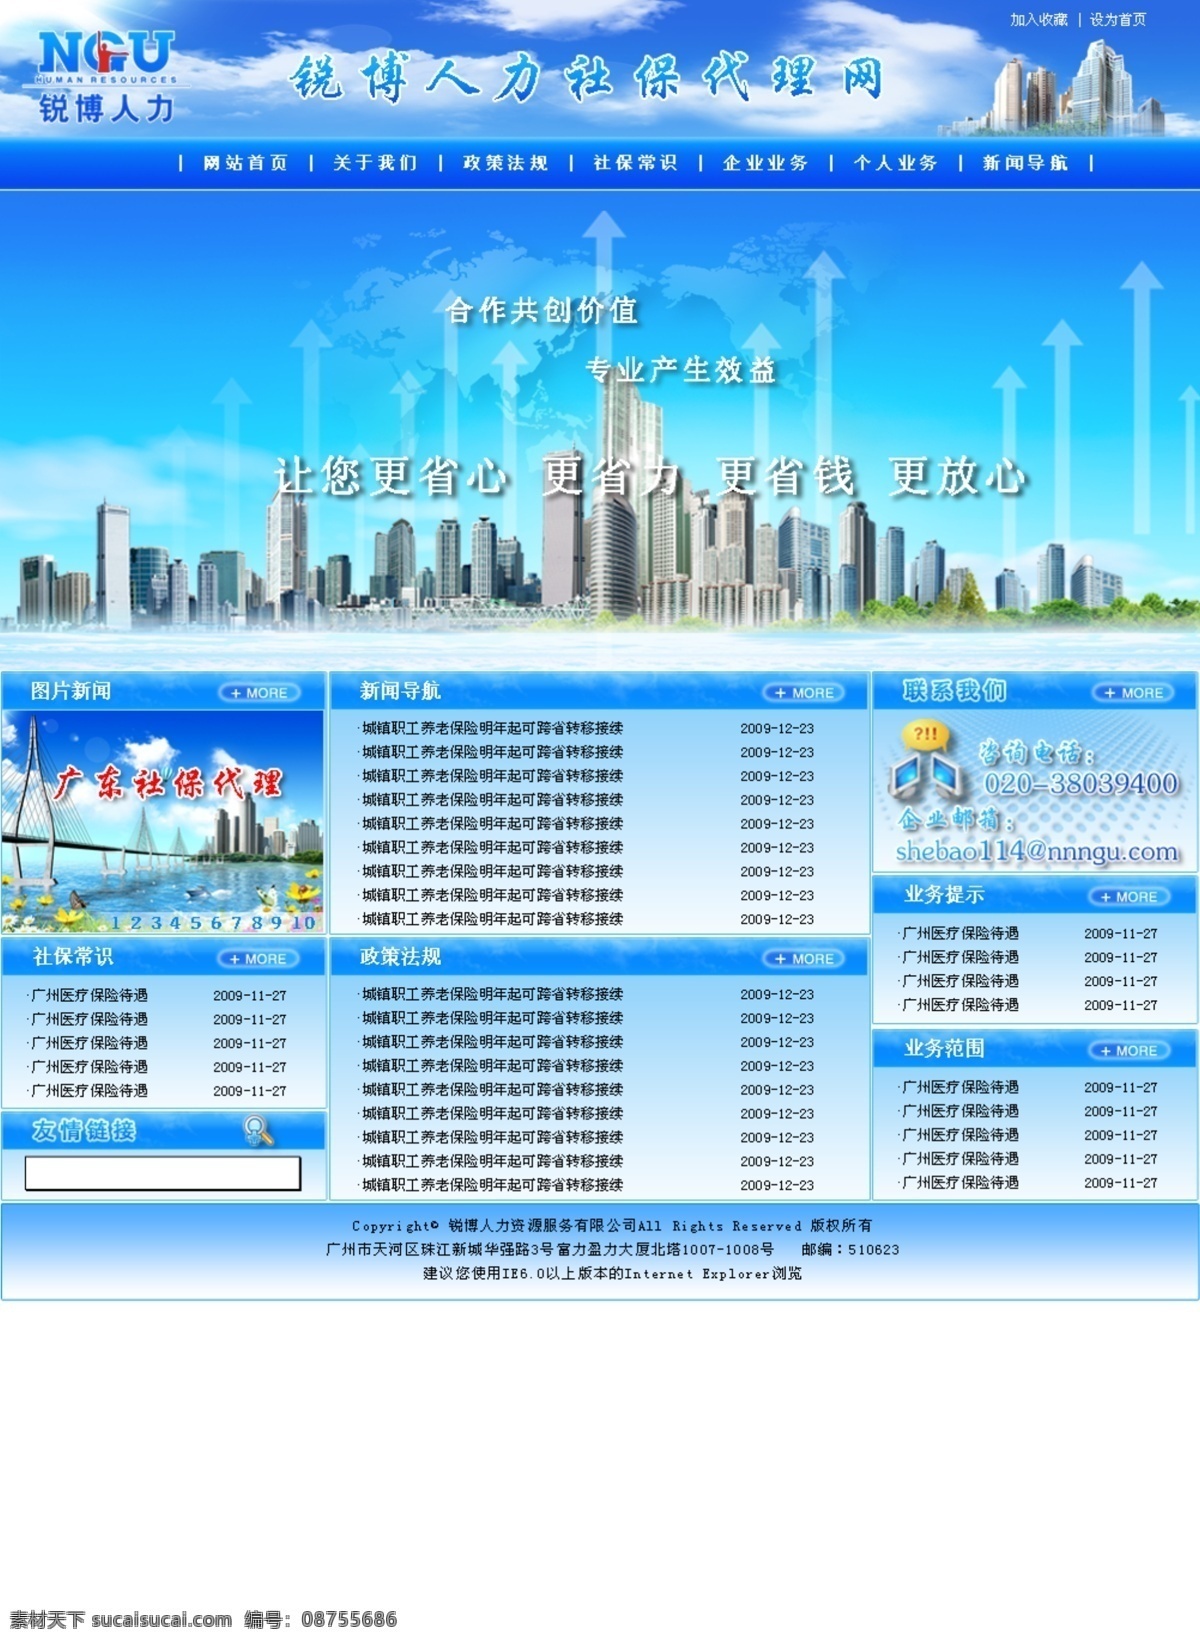 蓝色风格 蓝色模板 人力资源 网页模板 网页排版 网页设计 源文件 中文模板 模板下载